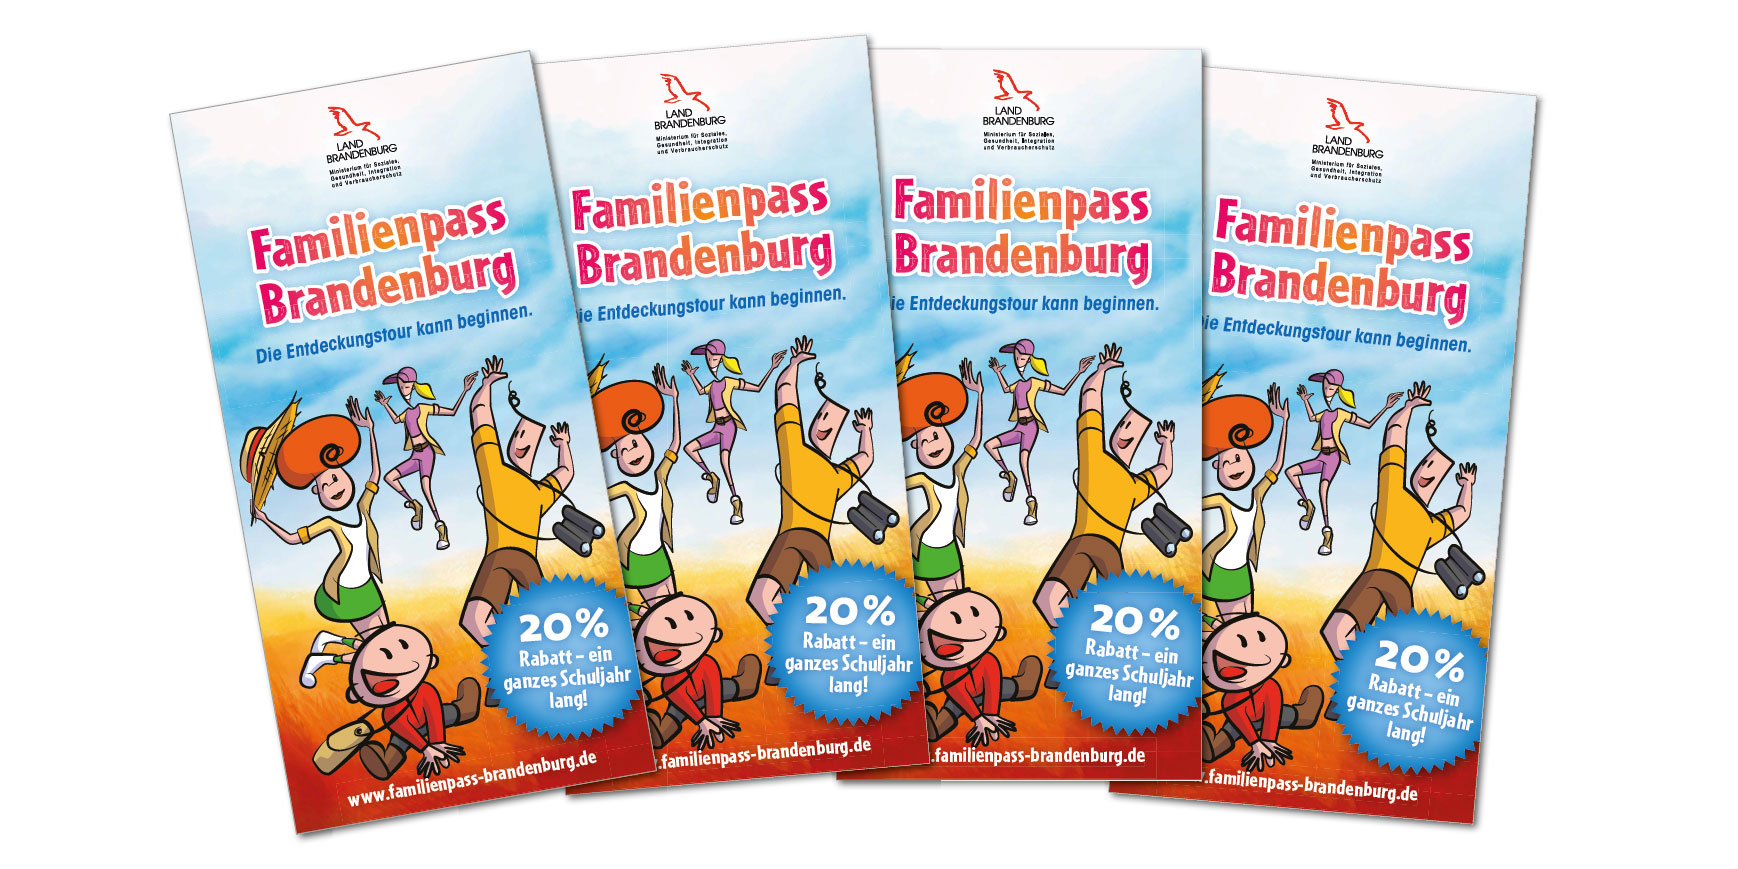 Familienpass_Brandenburg_2020_2021